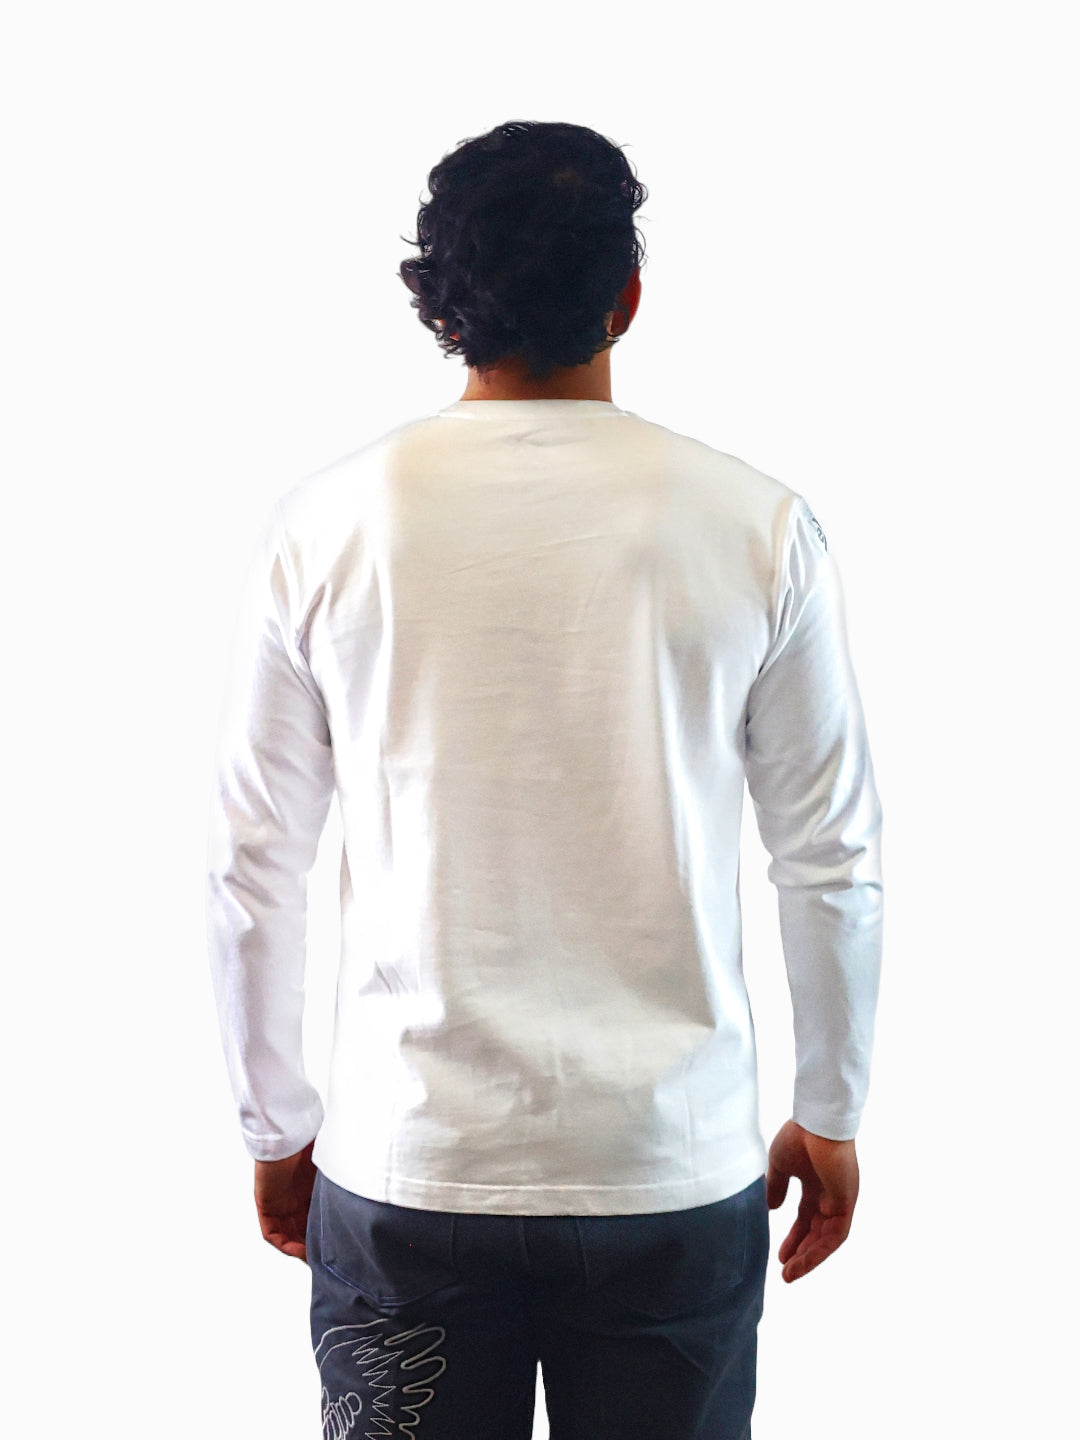 Exetees Regular Long Sleeve T-Shirt (White)